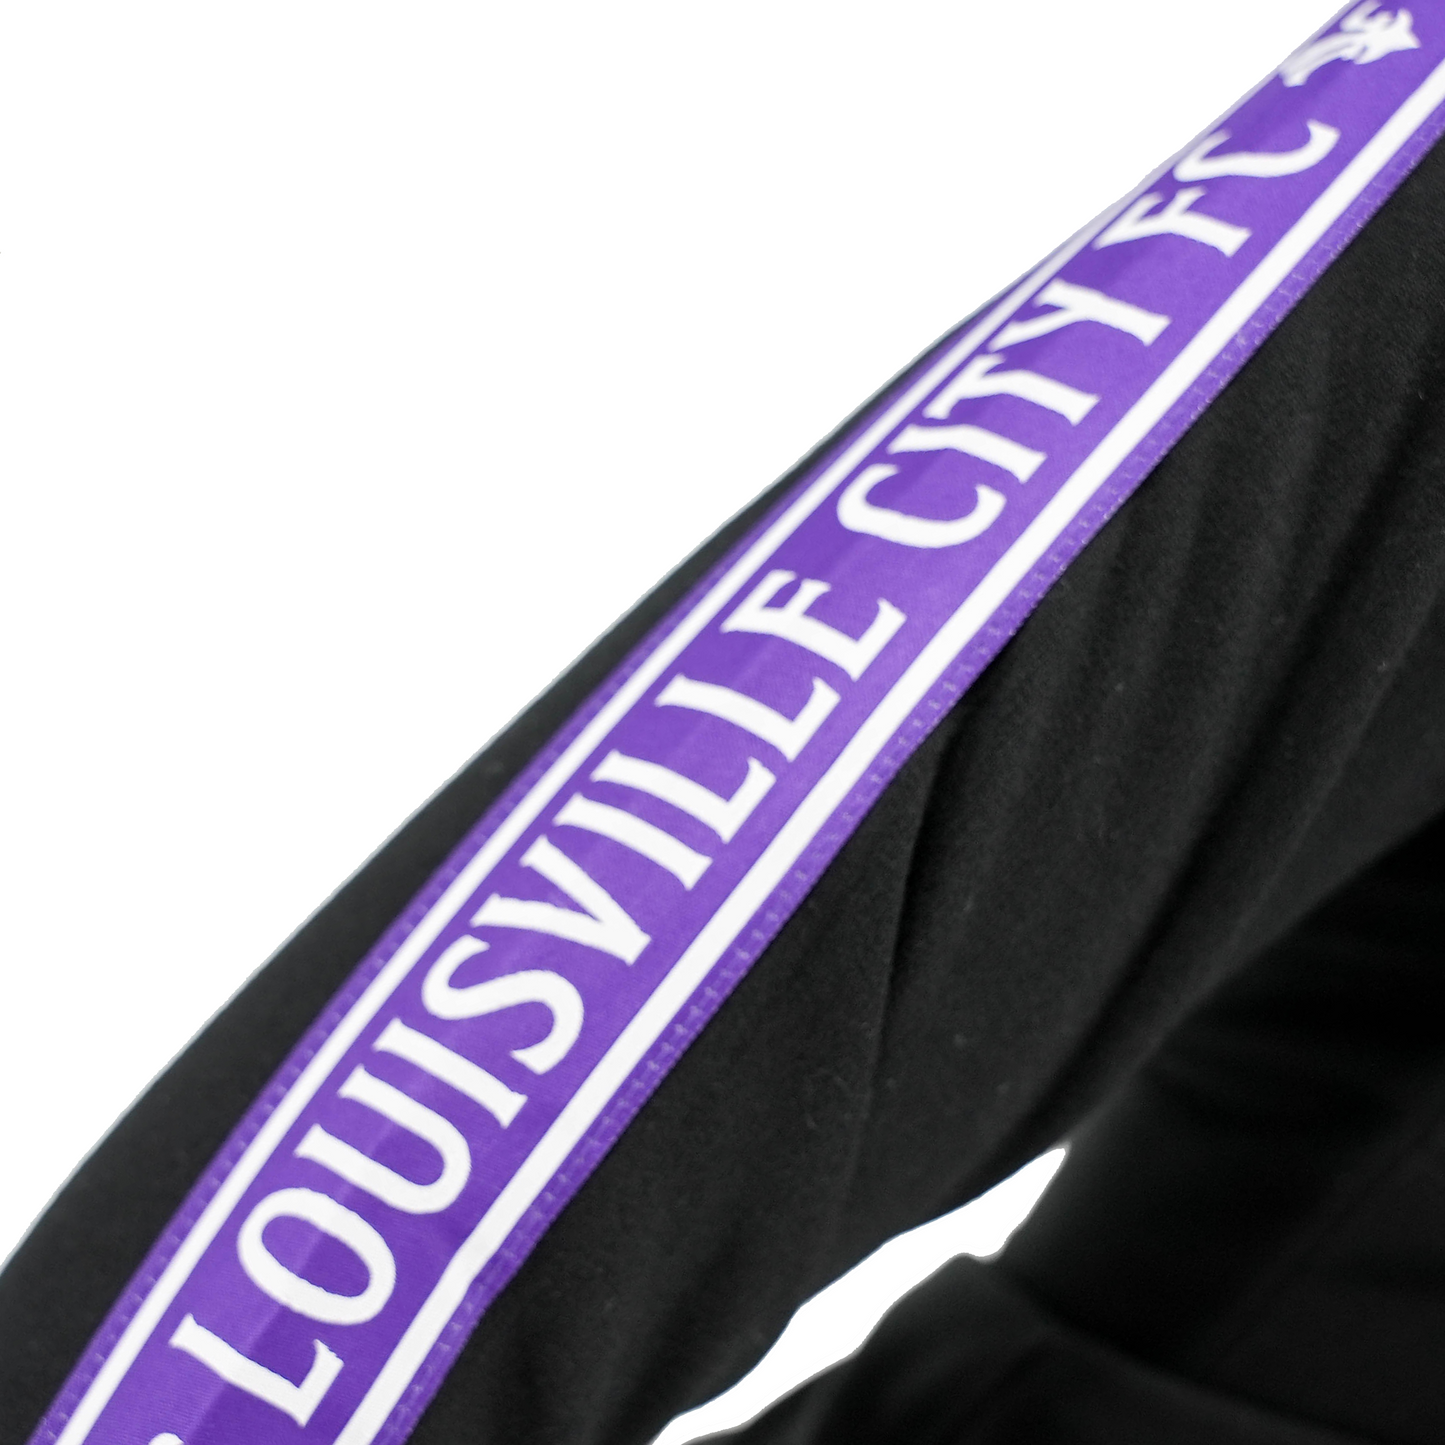 LouCity Sideline Collection Full Zip Hooded Sweatshirt